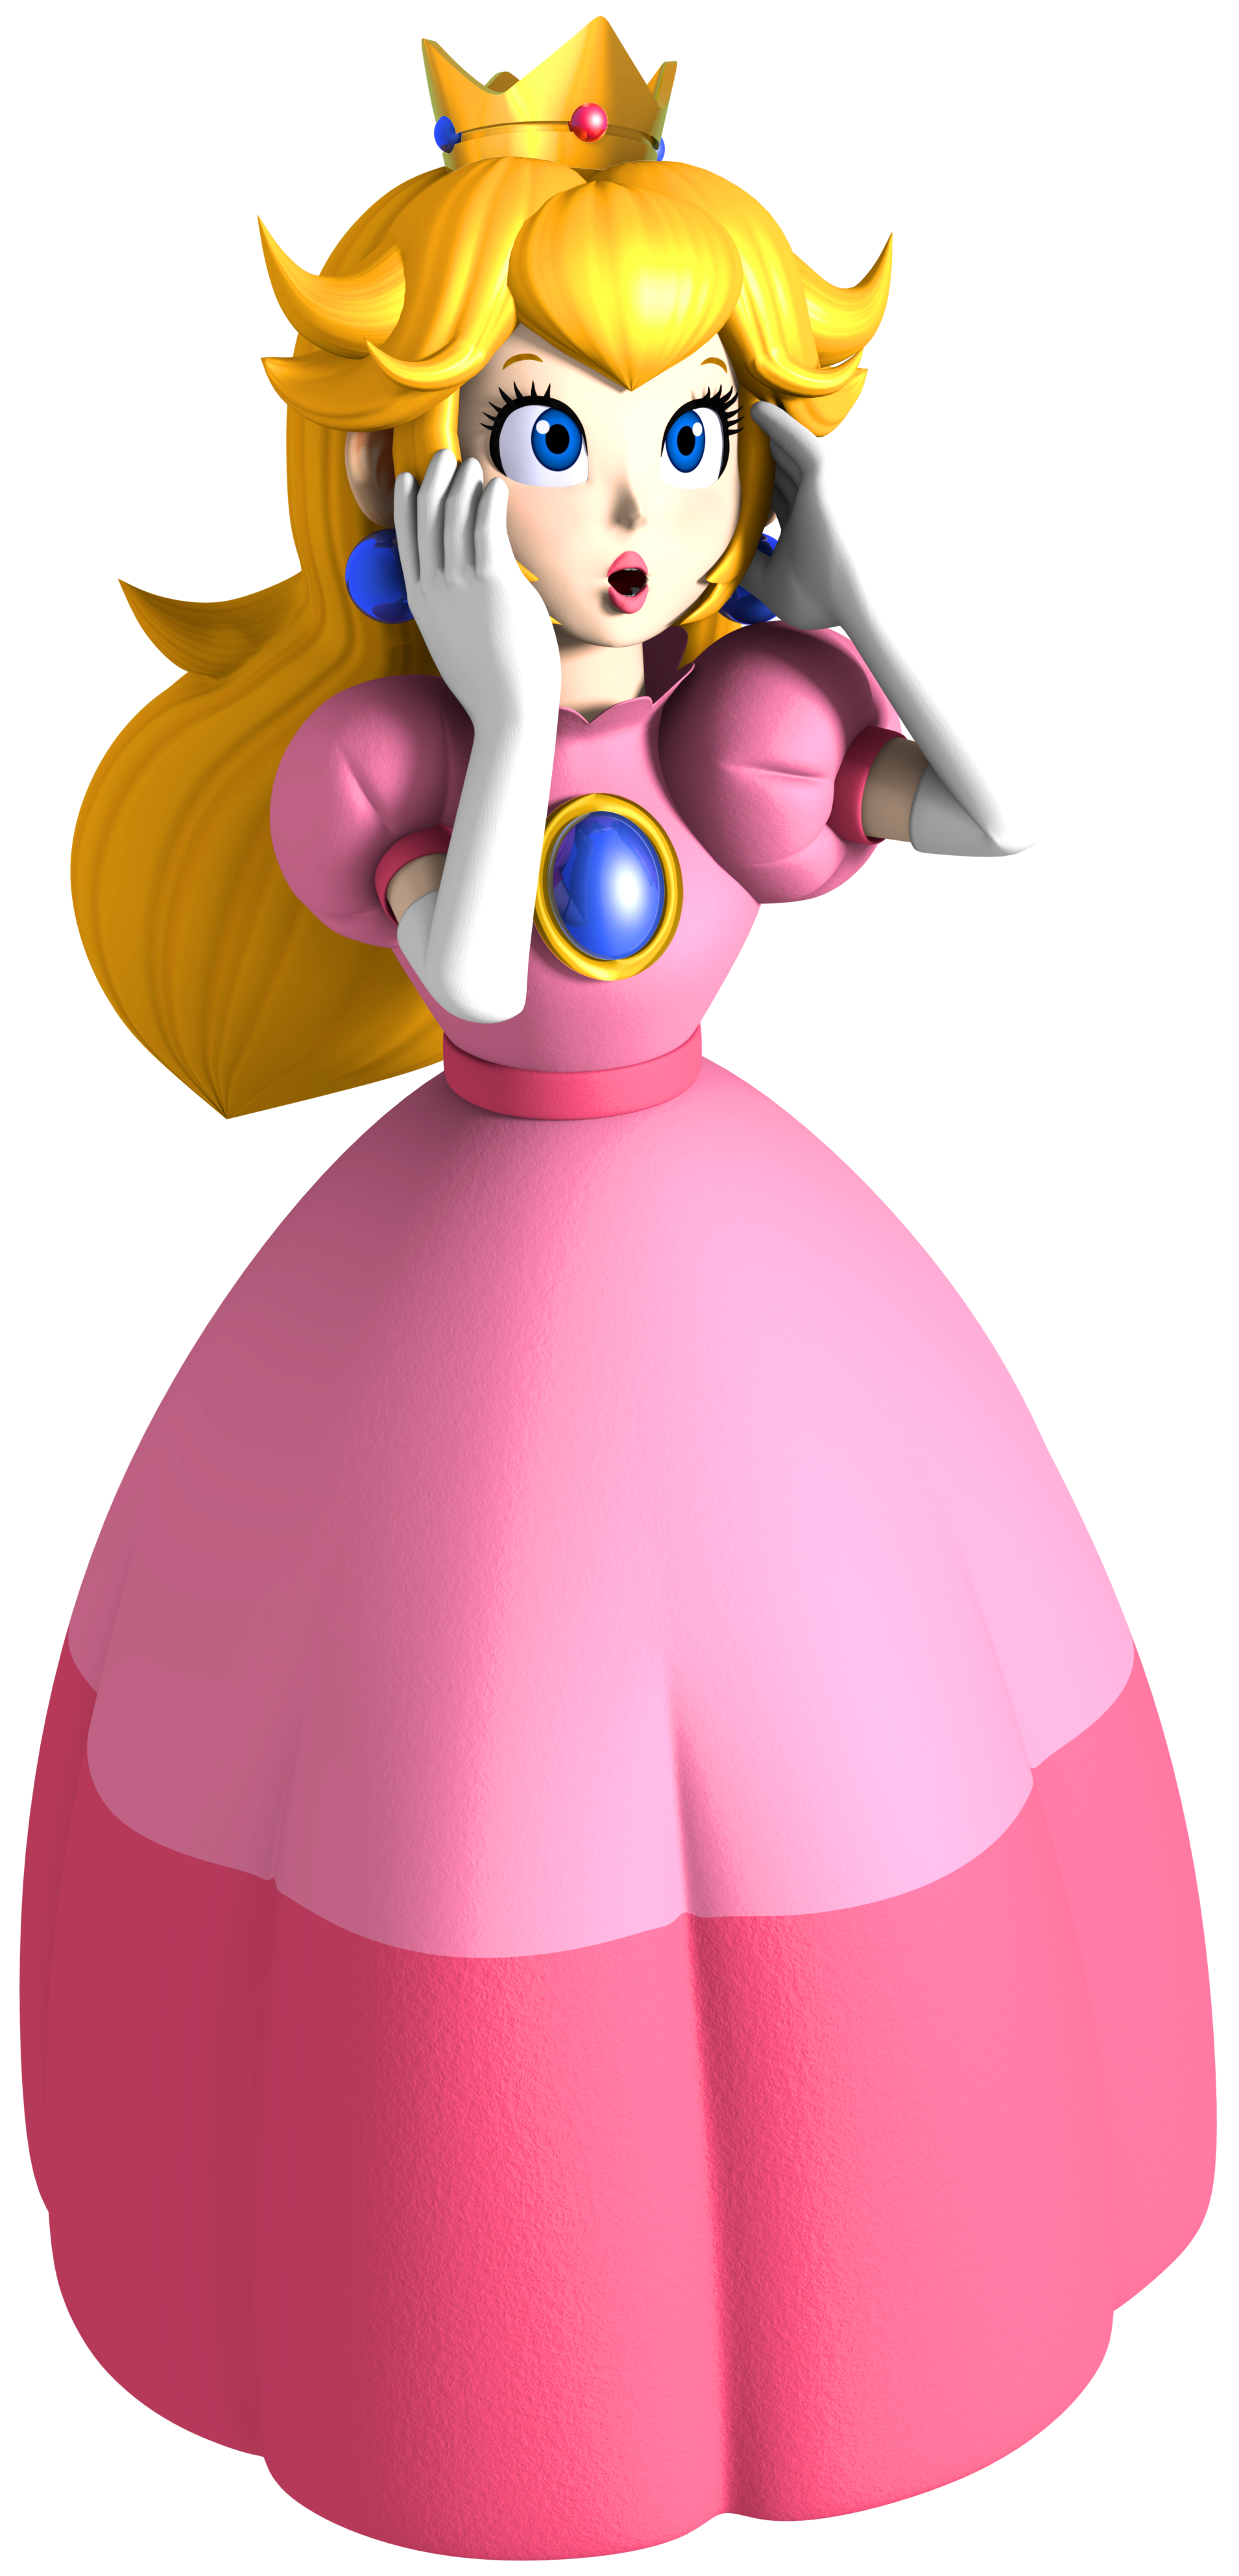 Princess Peach Princesa Peach Dibujos Dibujos Animados | Images and ...